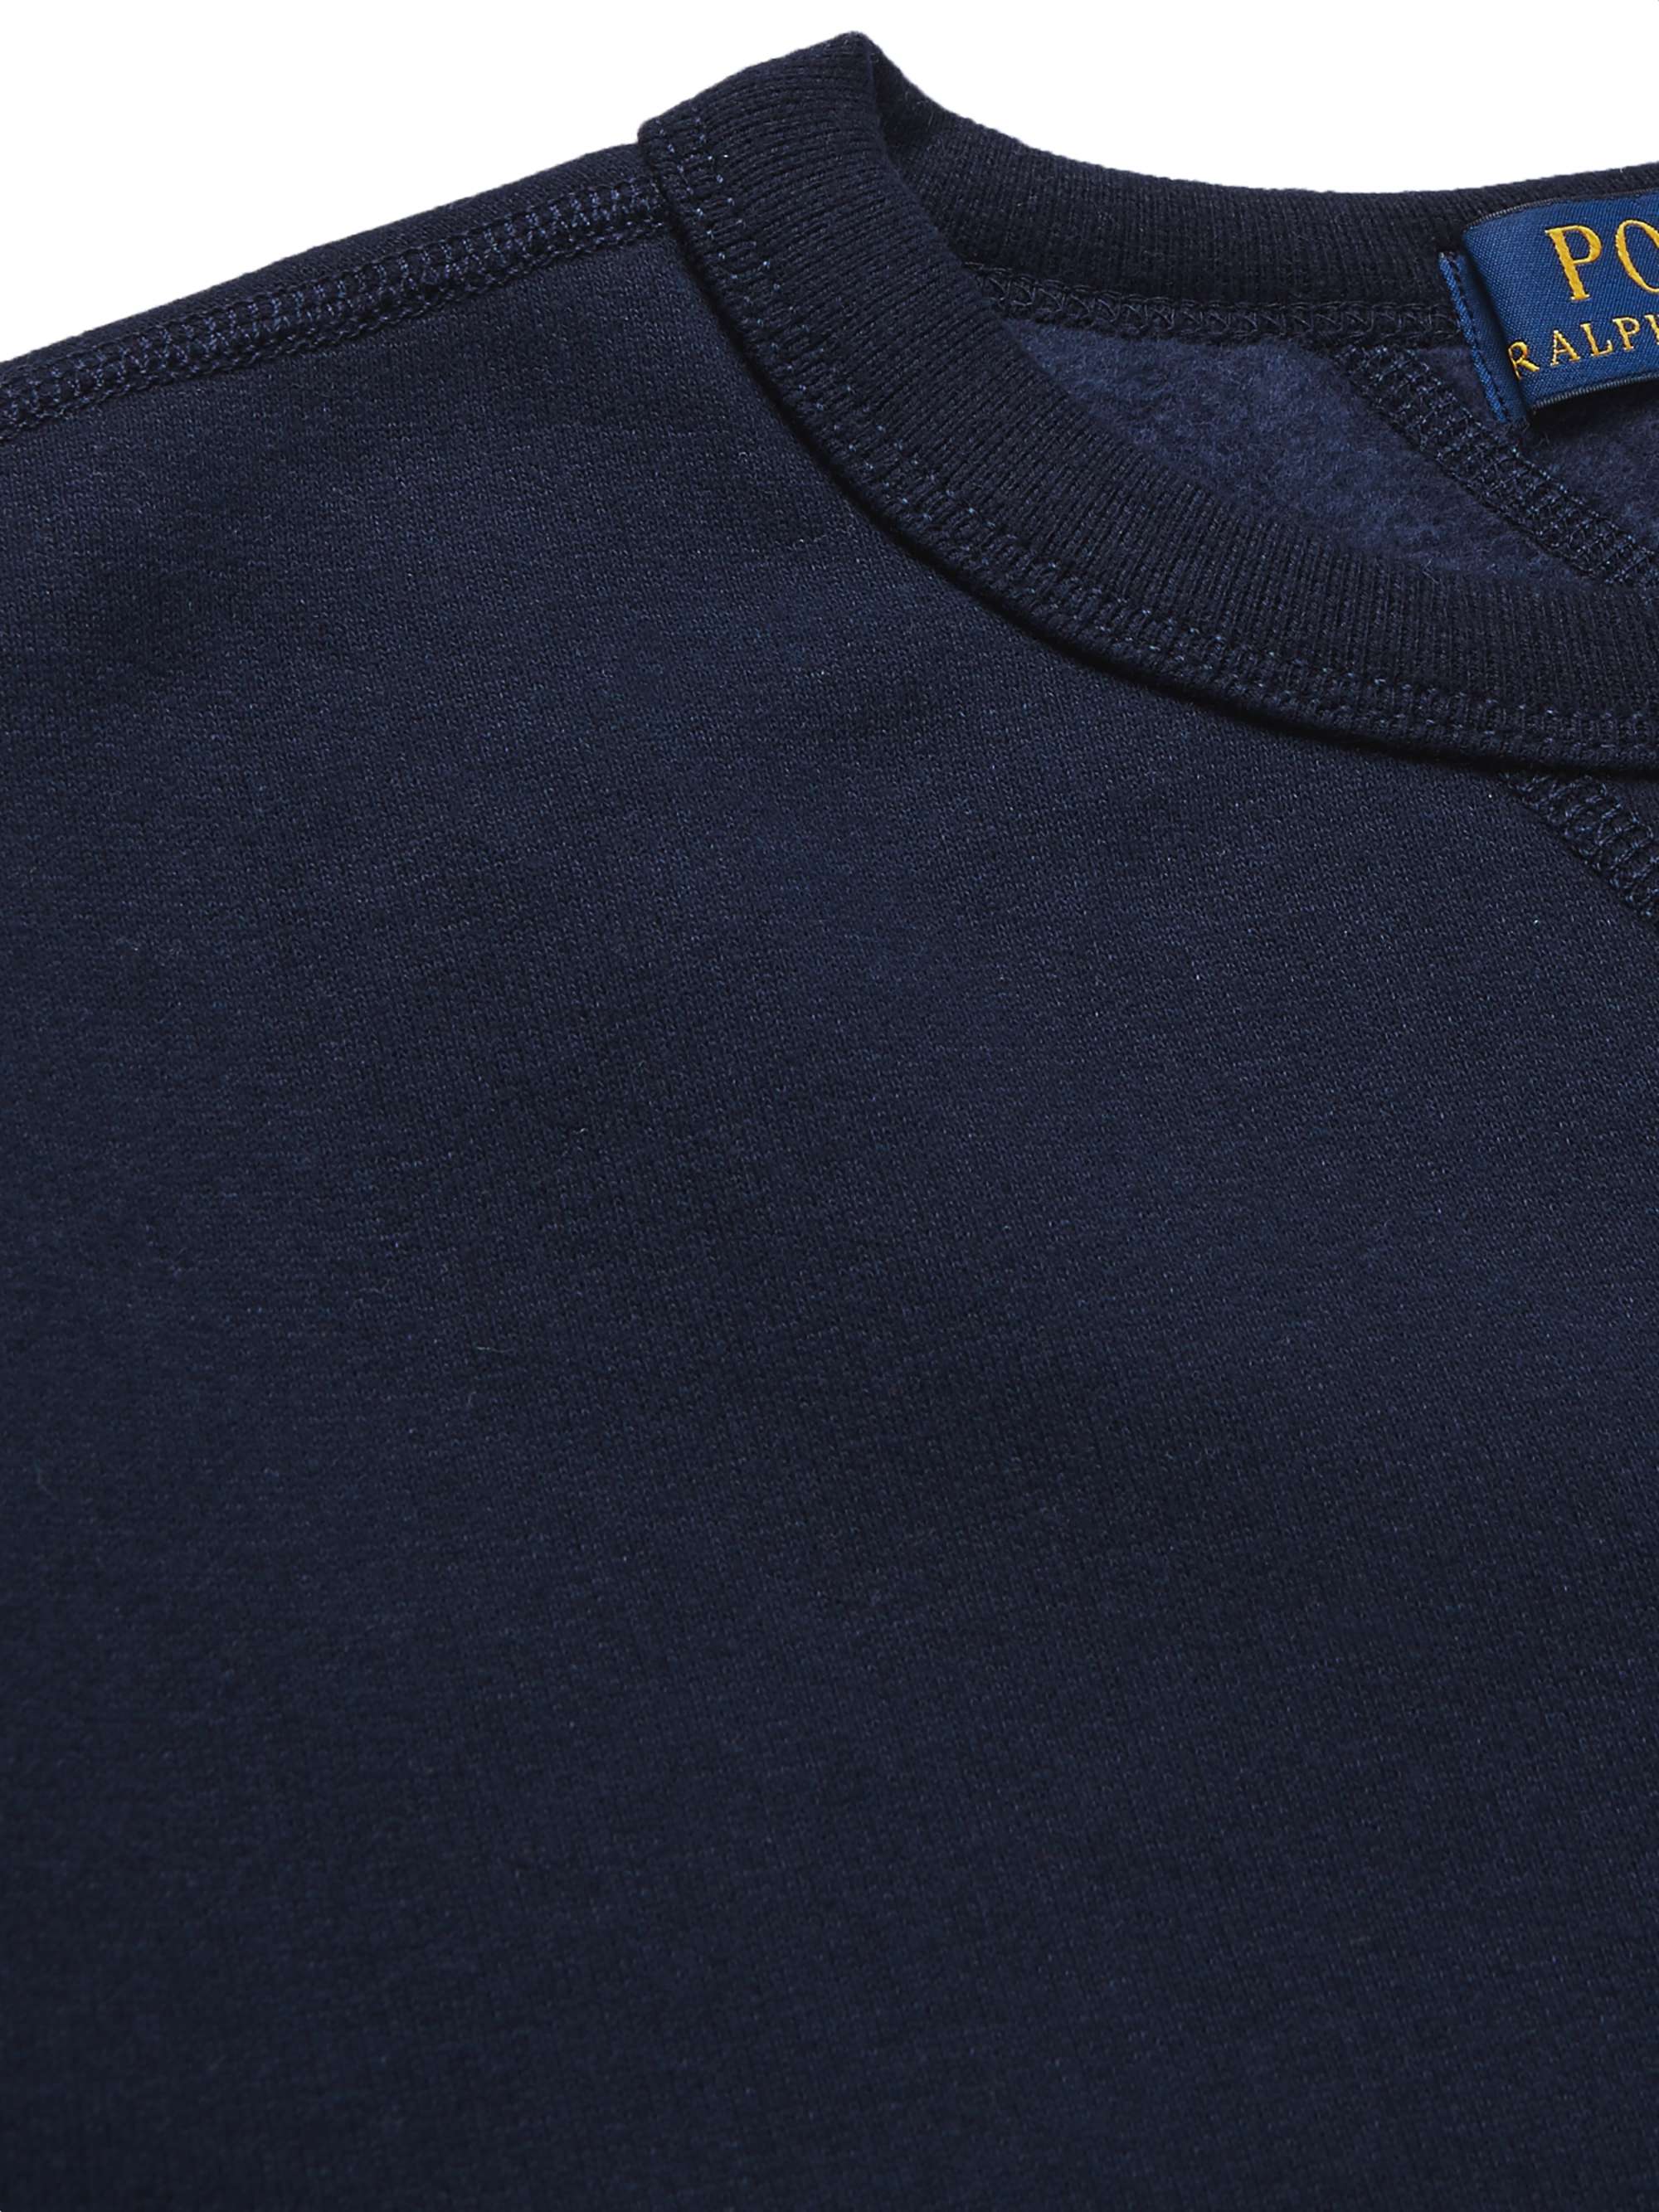 Logo-Embroidered Cotton-Blend Jersey Sweatshirt